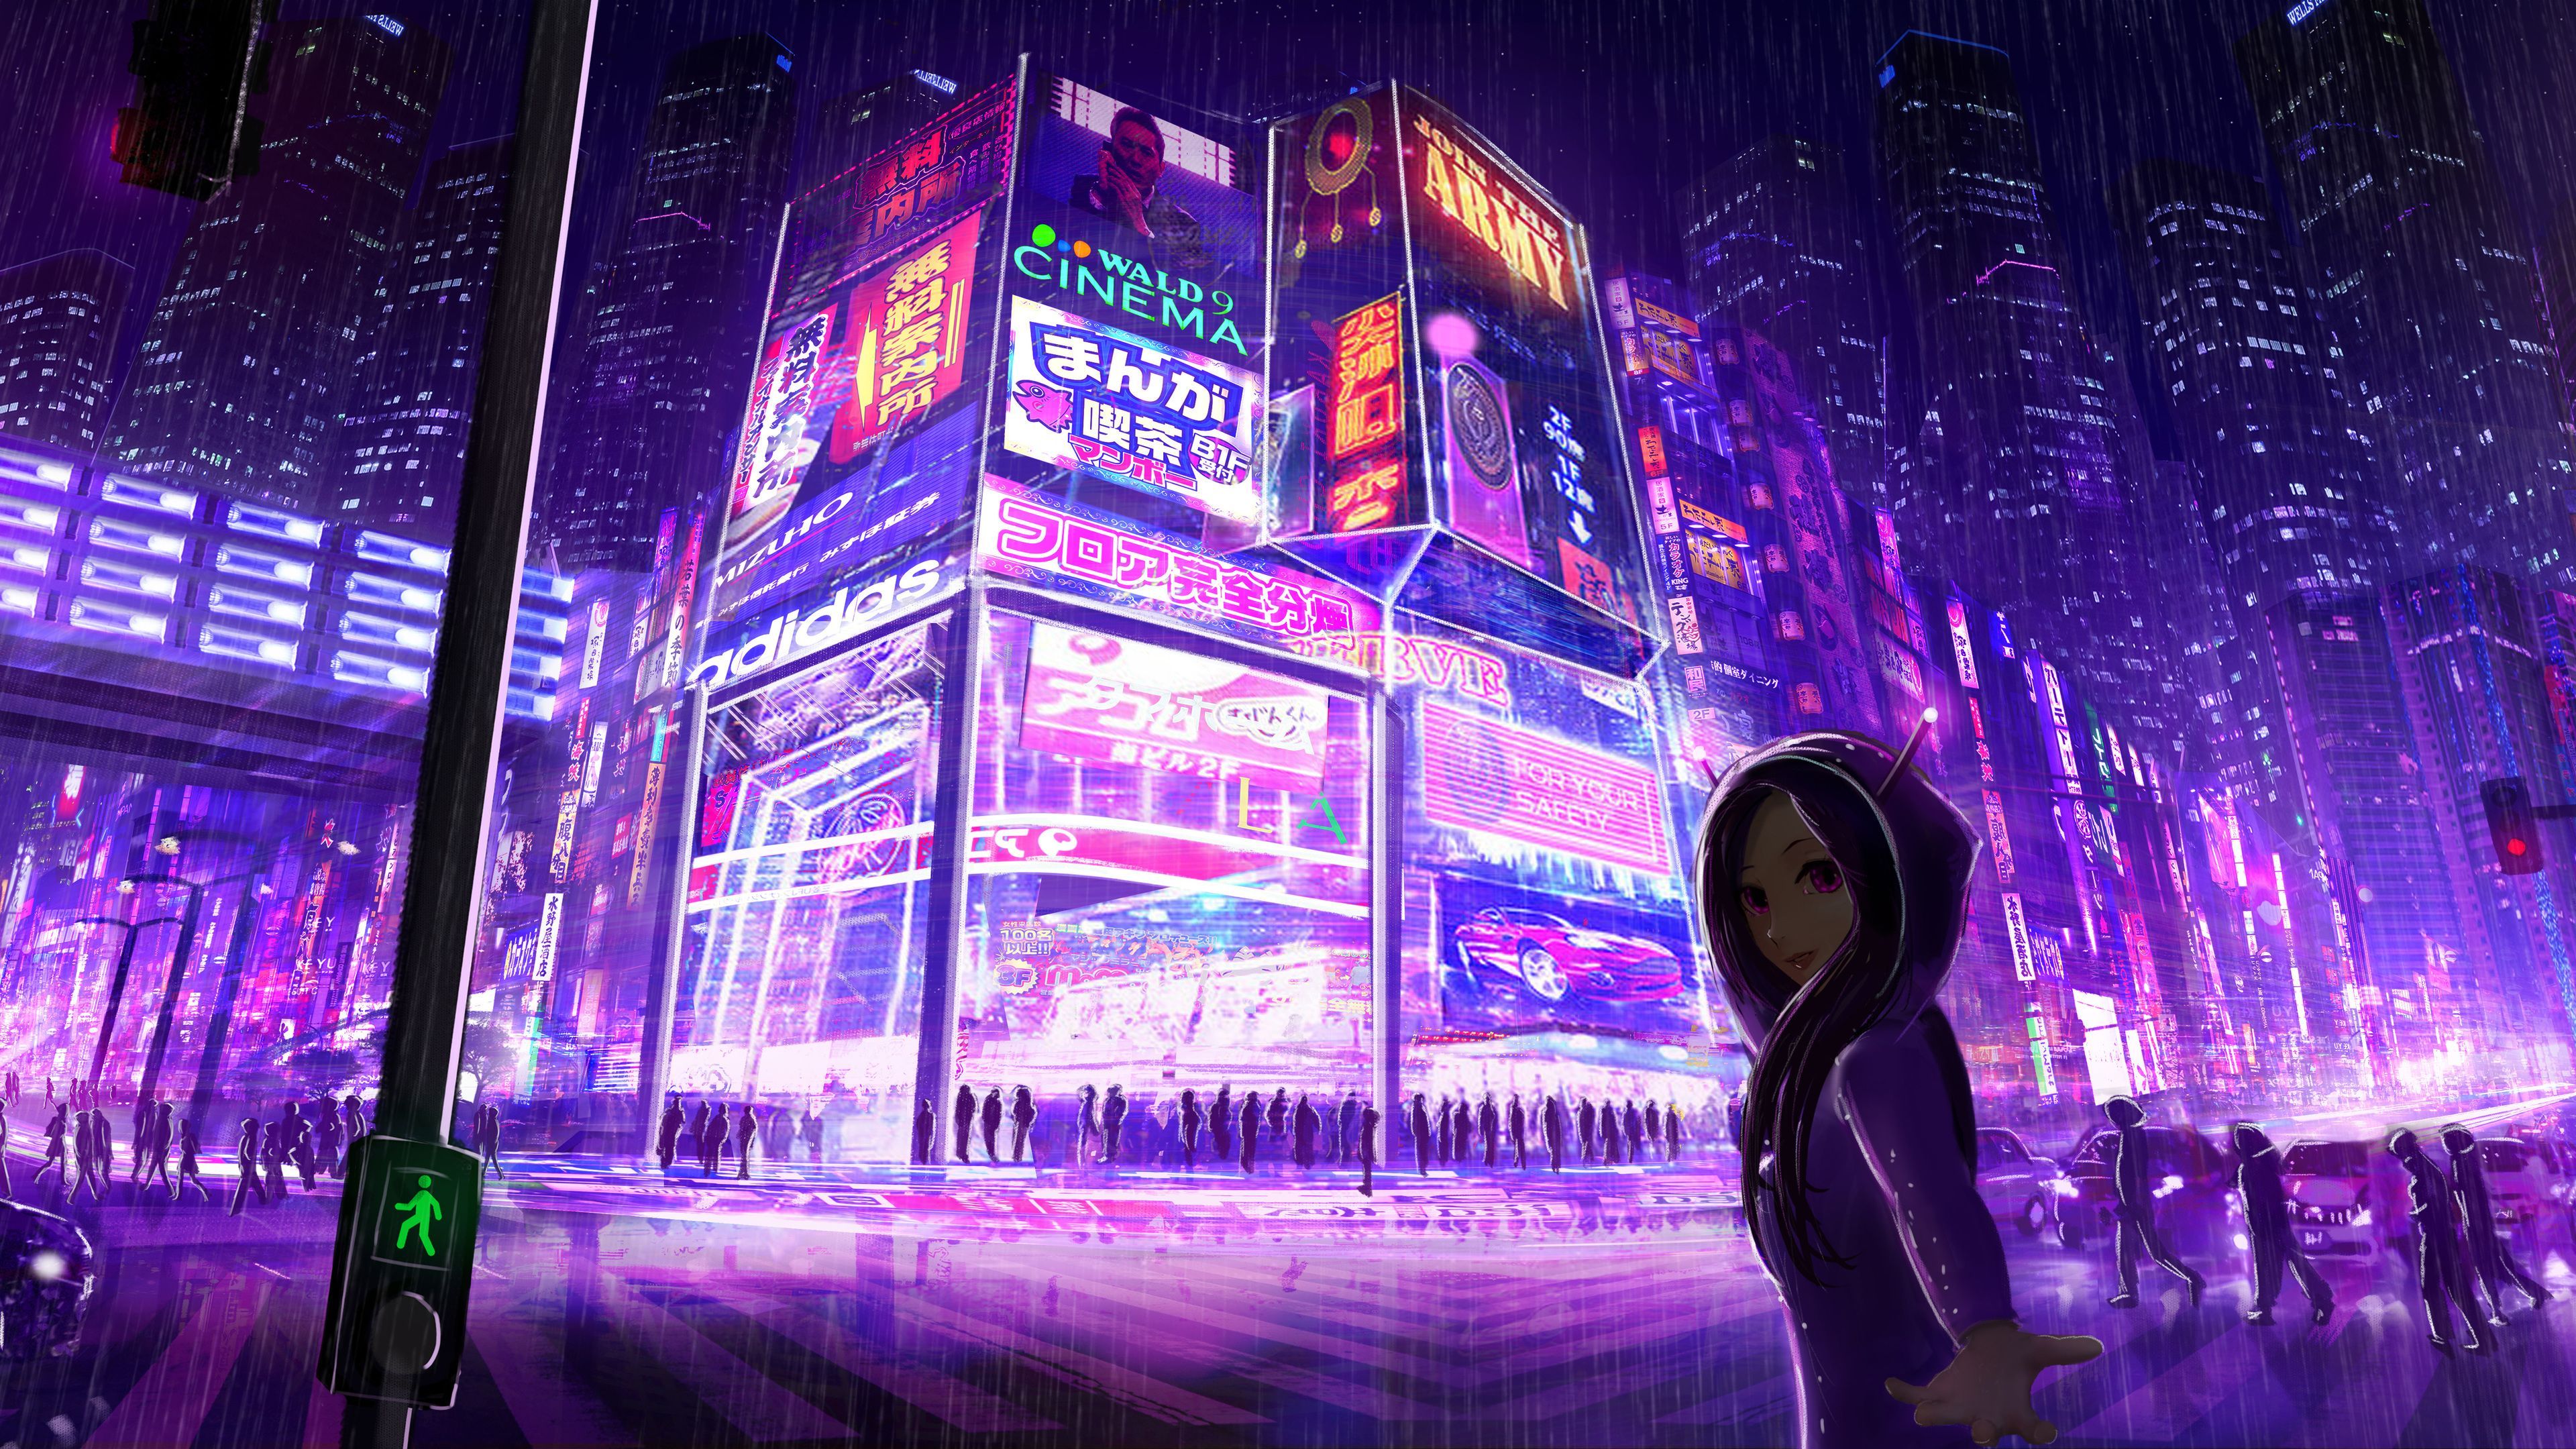 Hình nền Cyberpunk sẽ khiến bạn hiểu thêm về thế giới tương lai đầy bí ẩn và hiện đại. Màu sắc sắc nét và chi tiết công nghệ cao trên hình nền sẽ khiến bạn choáng ngợp.